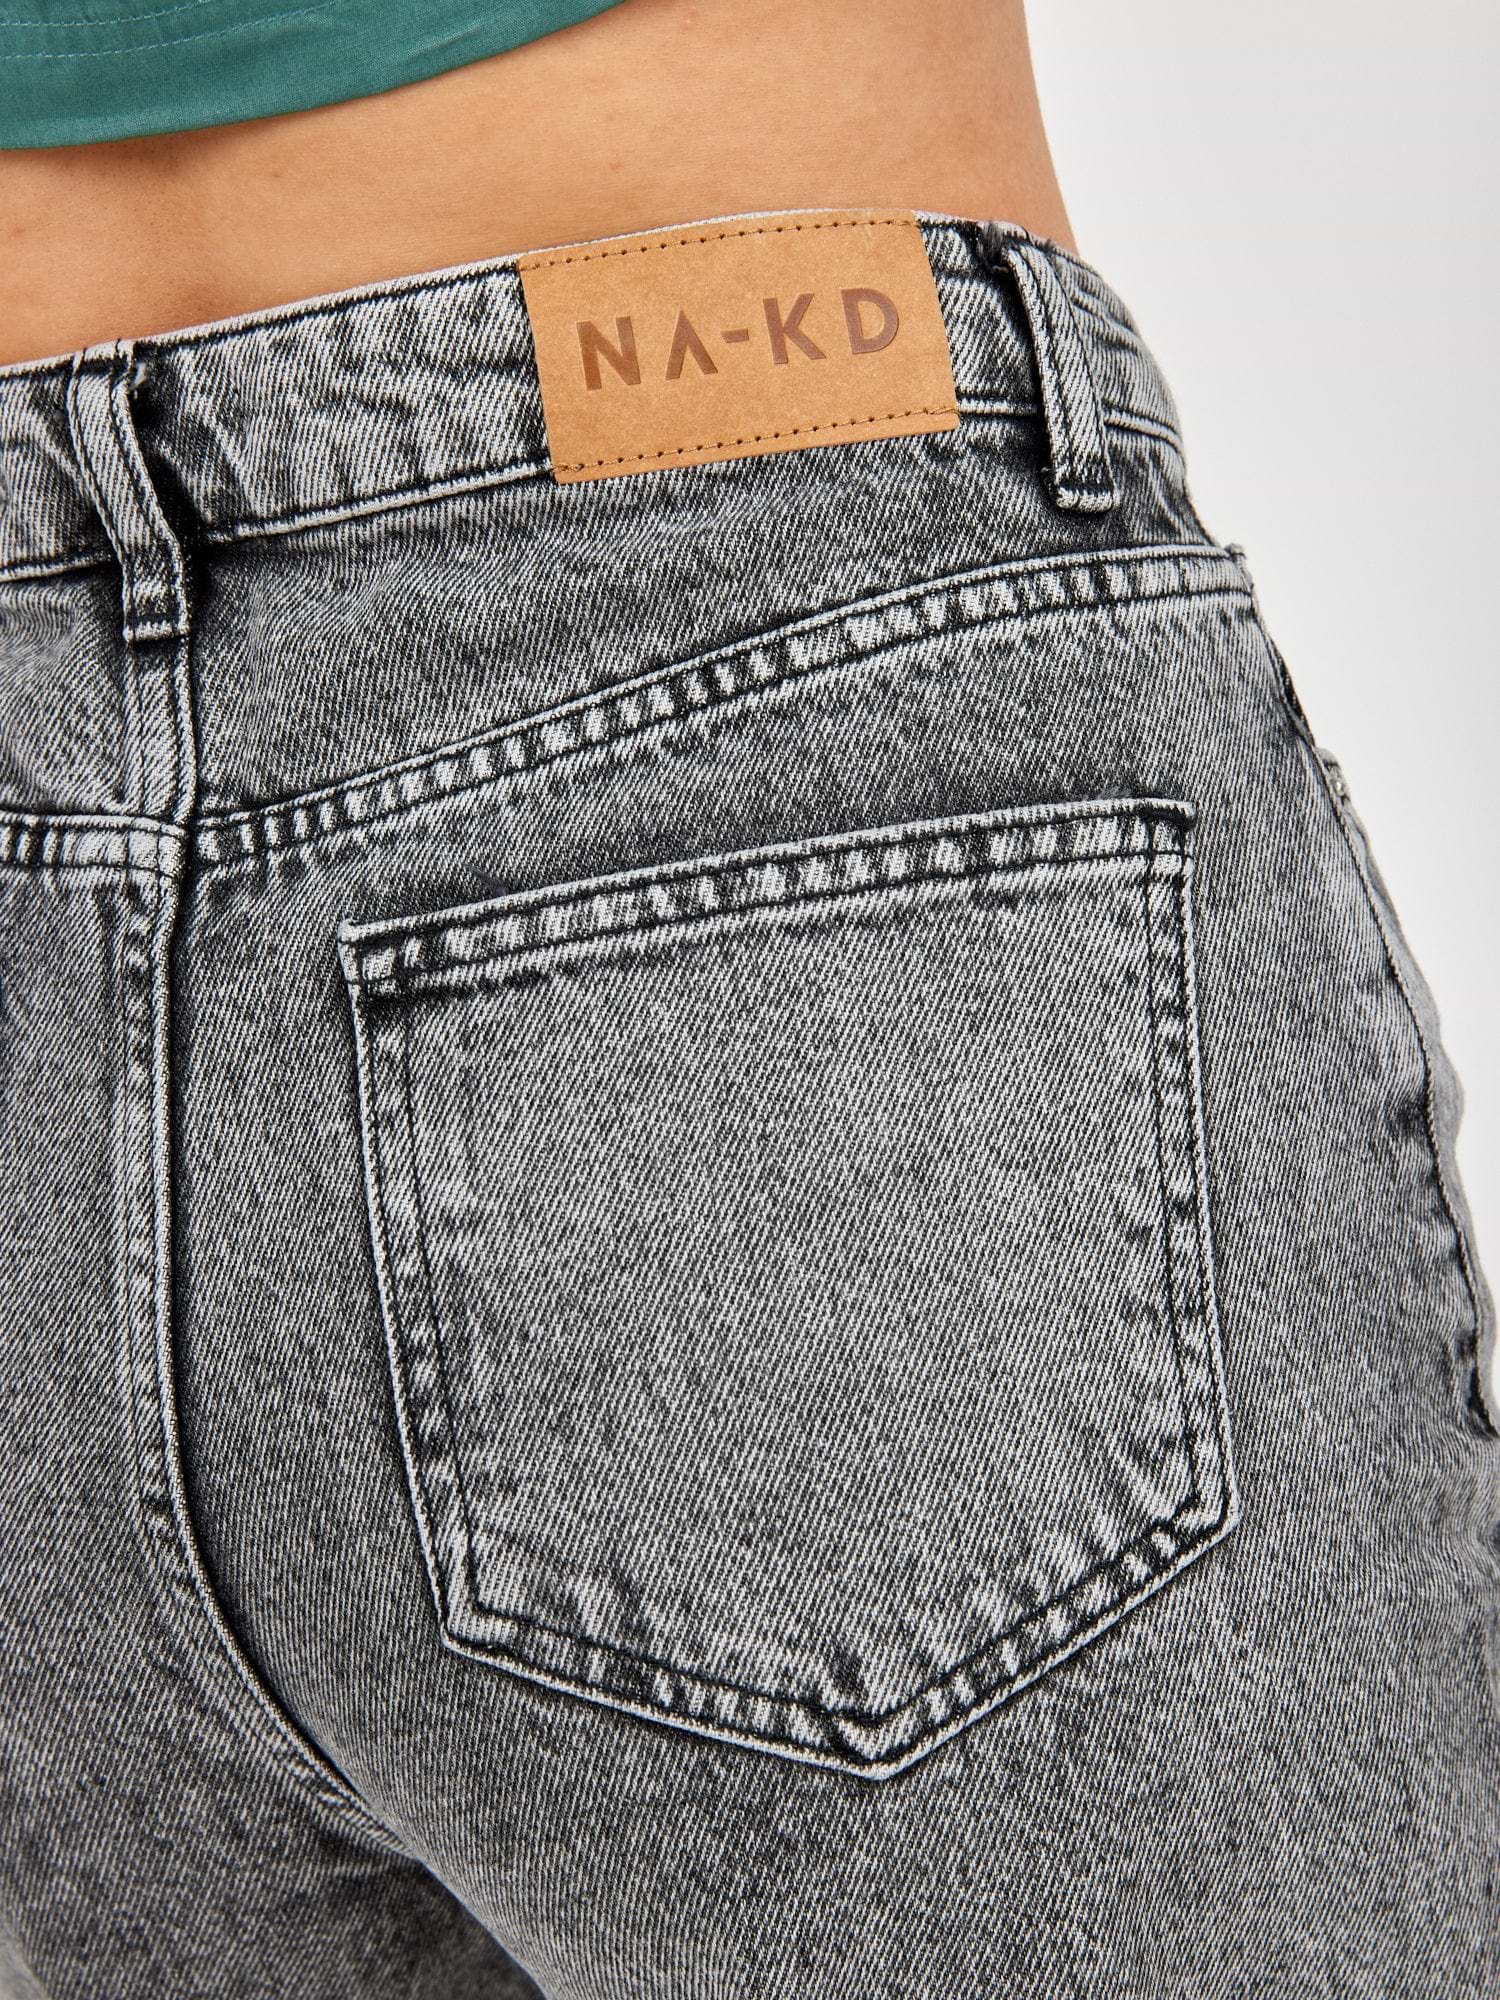 מכנסי ג'ינס בגזרה גבוהה ומתרחבת- NA-KD|נייקד